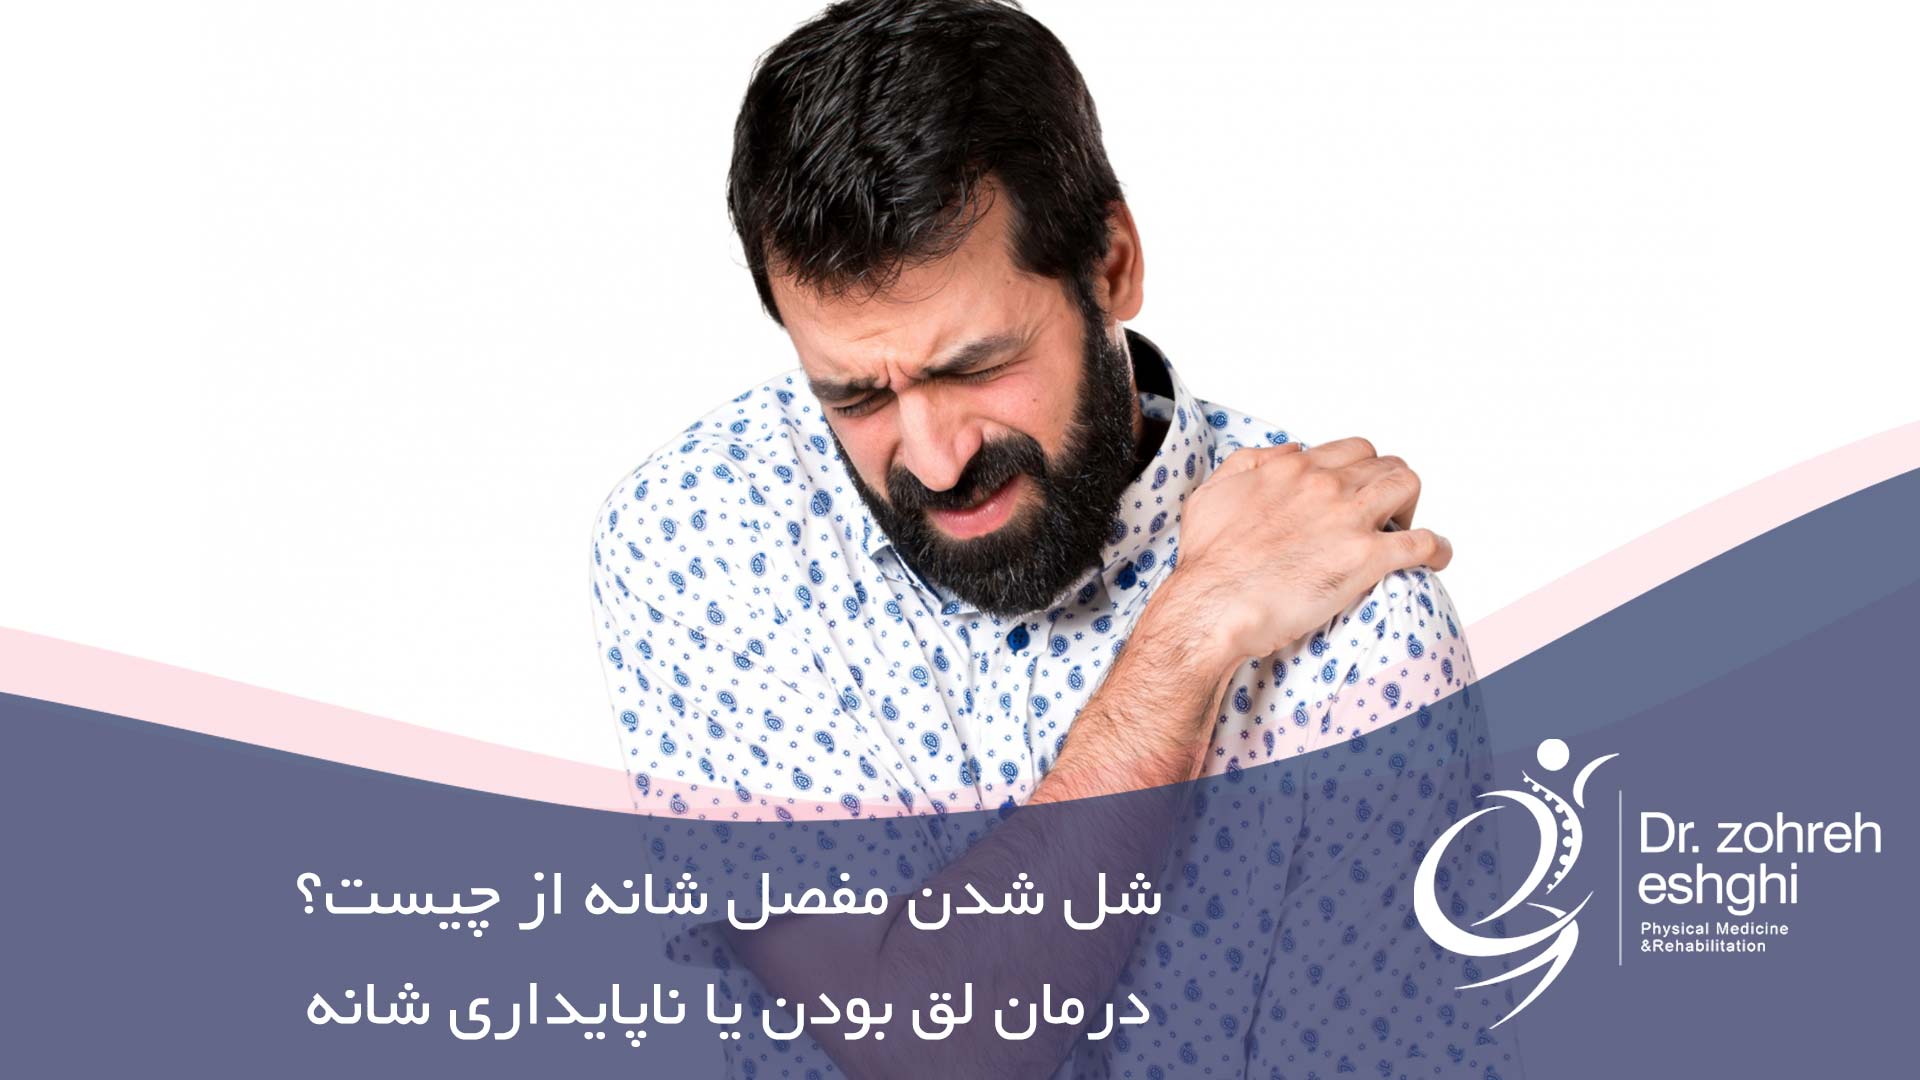 شل شدن مفصل شانه: درمان لق بودن یا ناپایداری شانه در شیراز